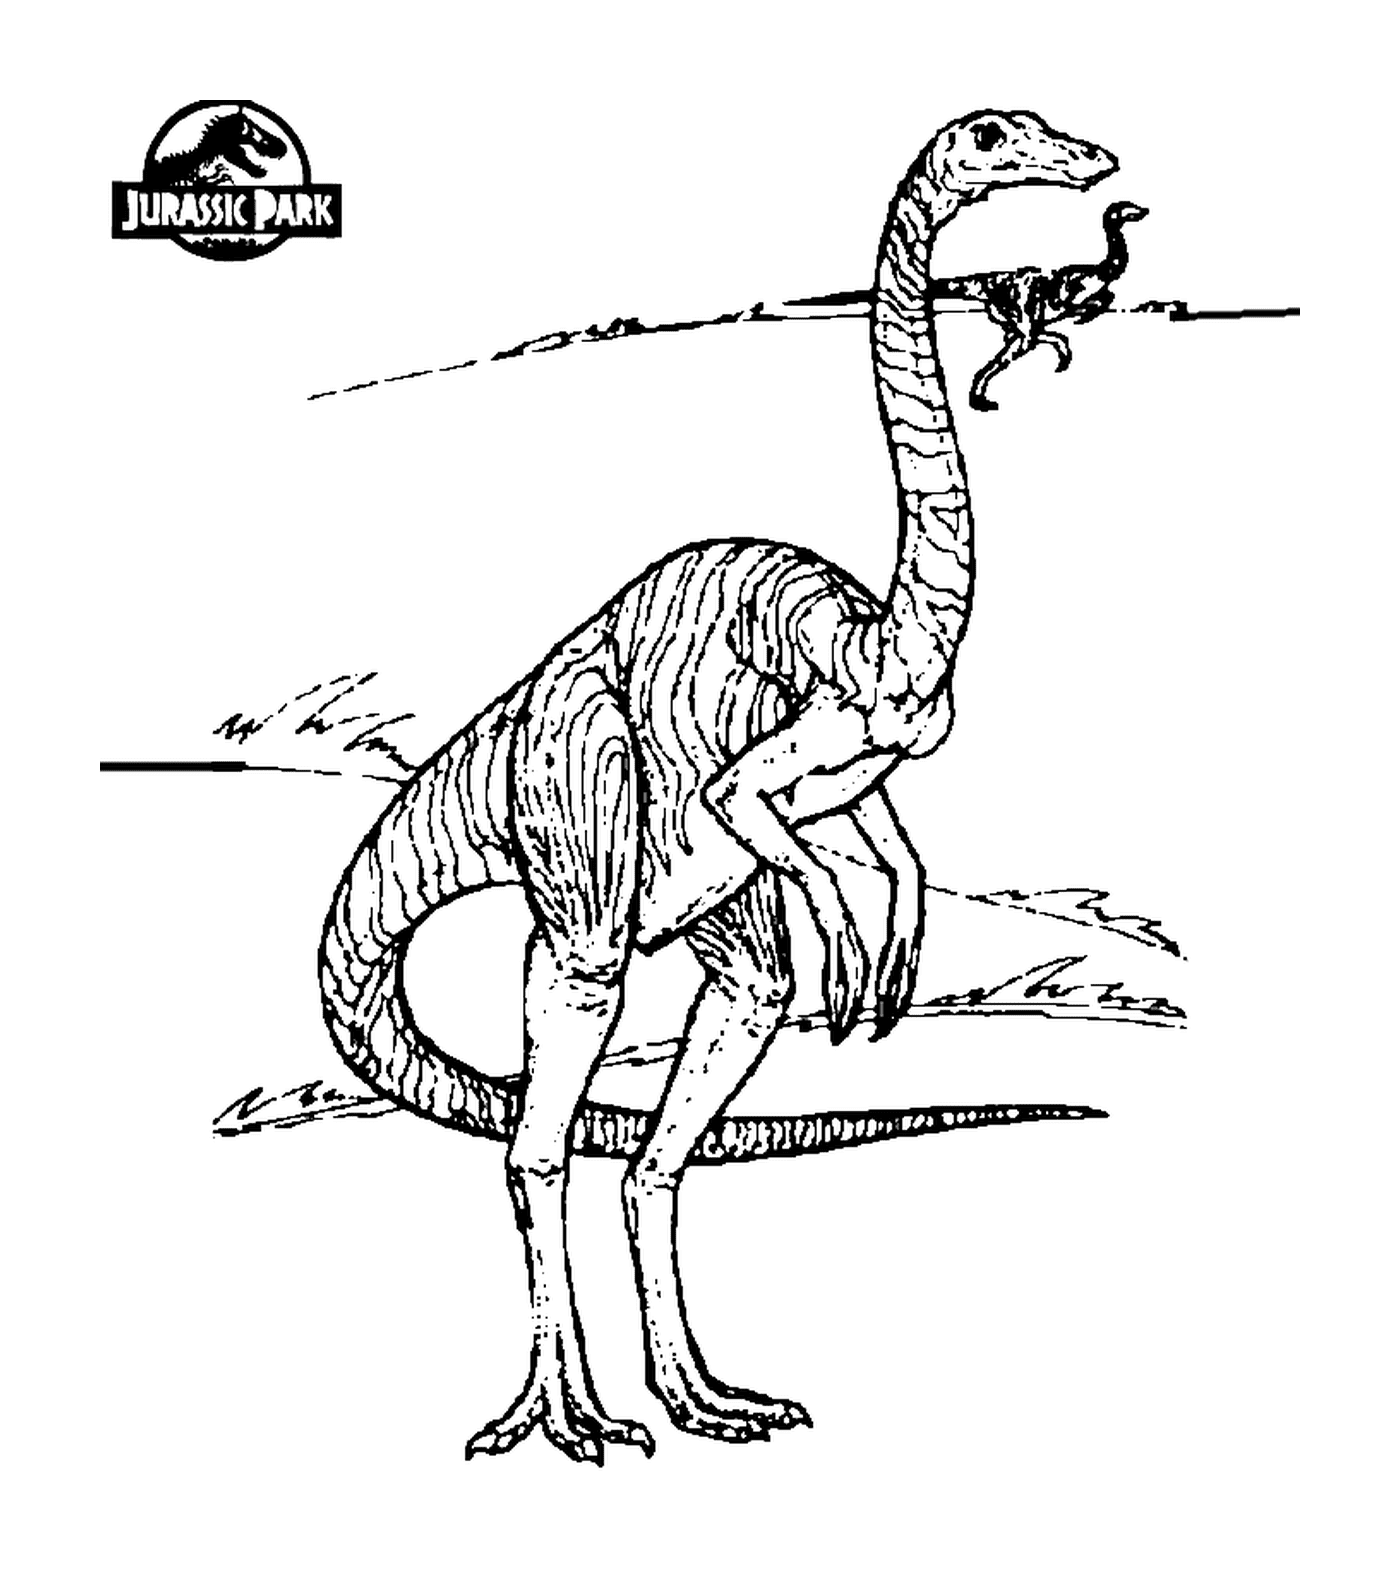  Jurassic Park, el arte de la ilustración 